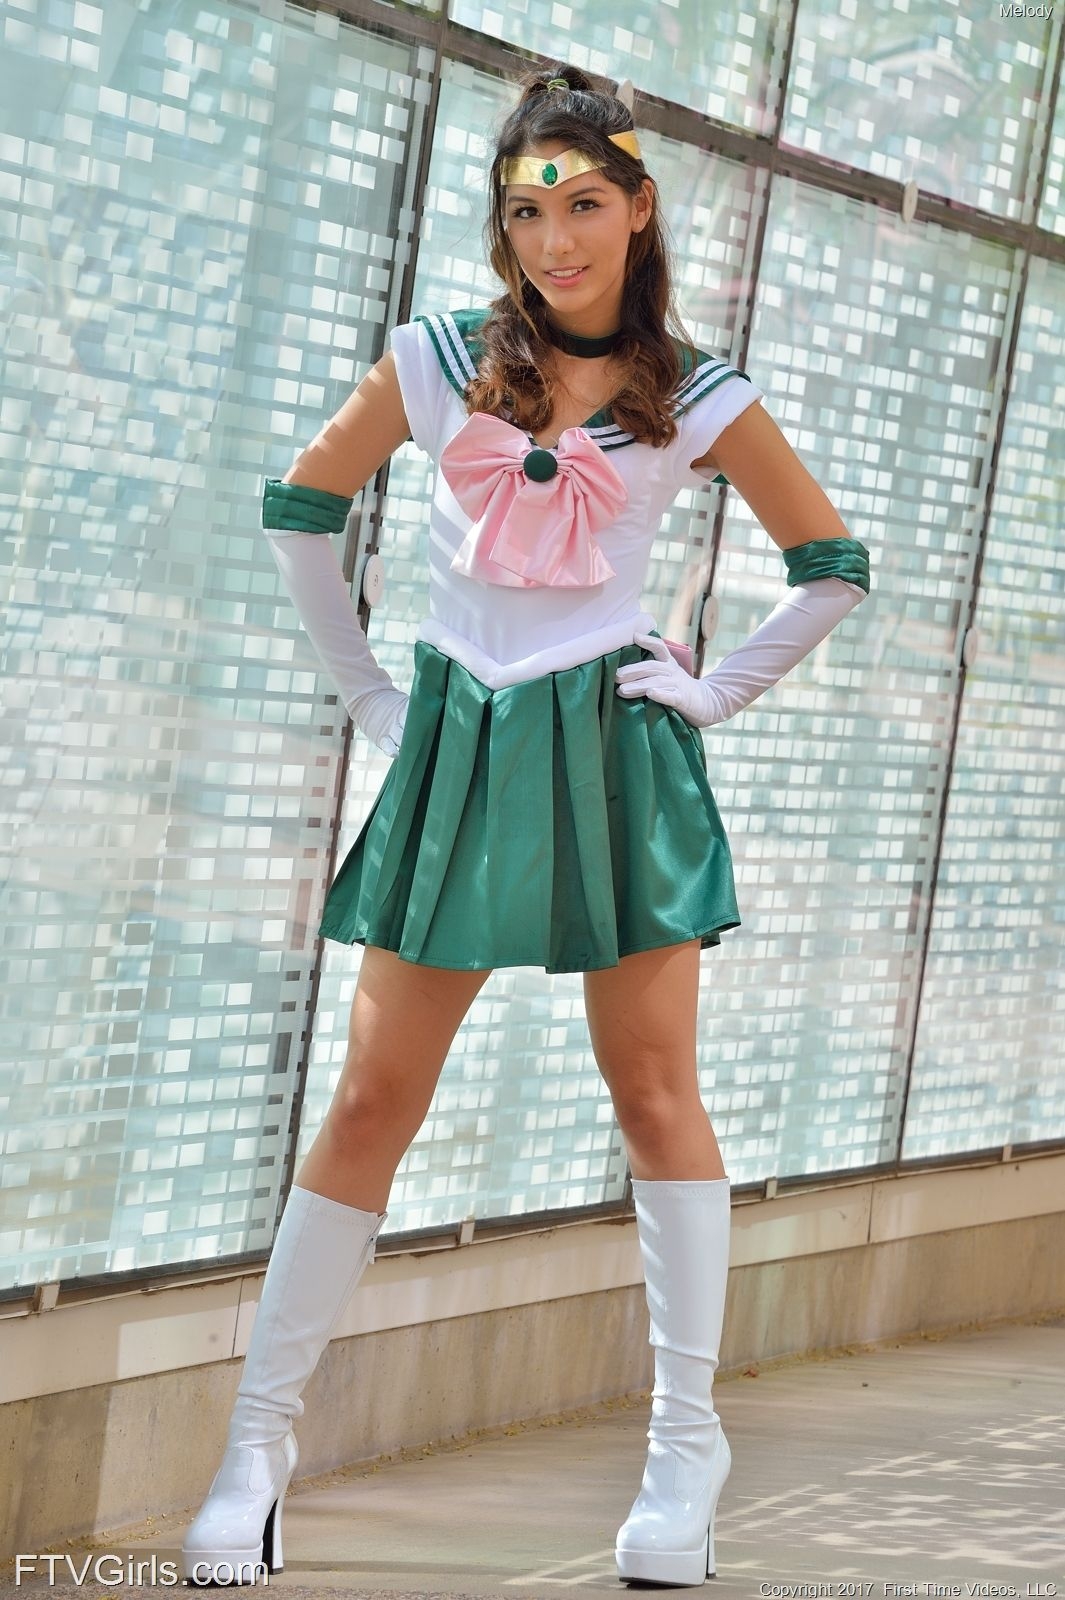 Melody Wylde as Sailor Jupiter 17